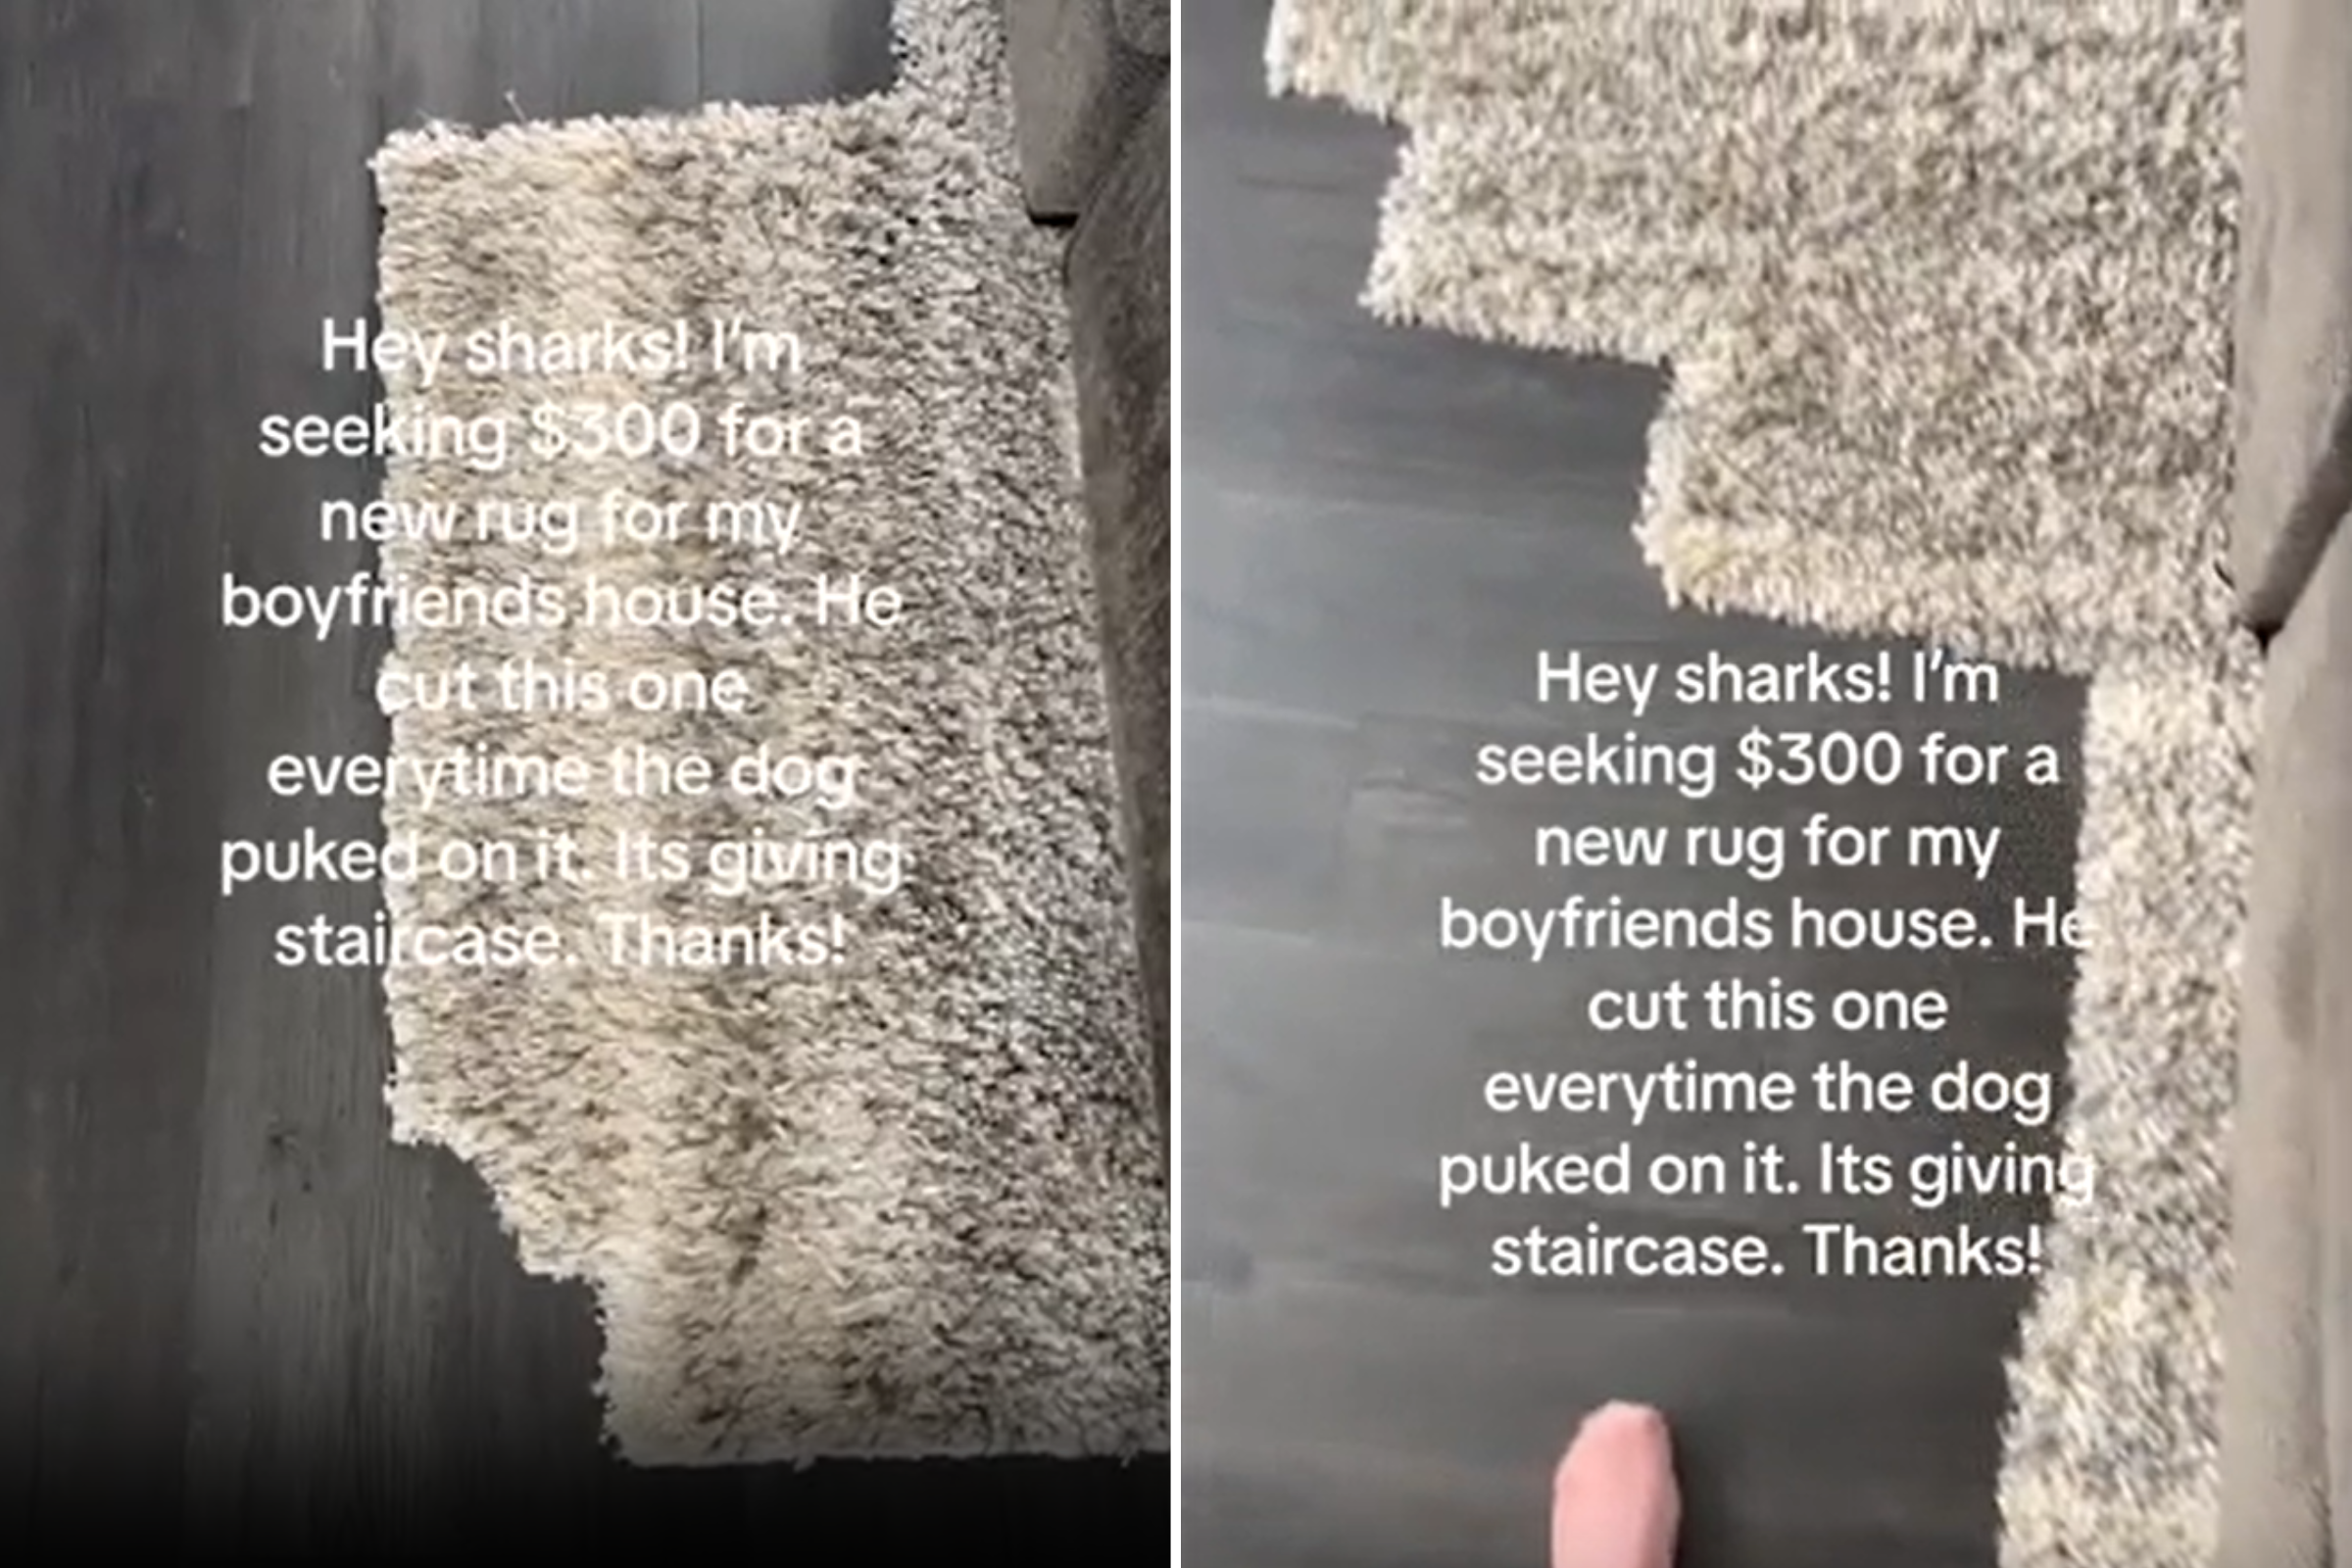 Reason boyfriend keeps cutting chunks off rug has woman pleading for help